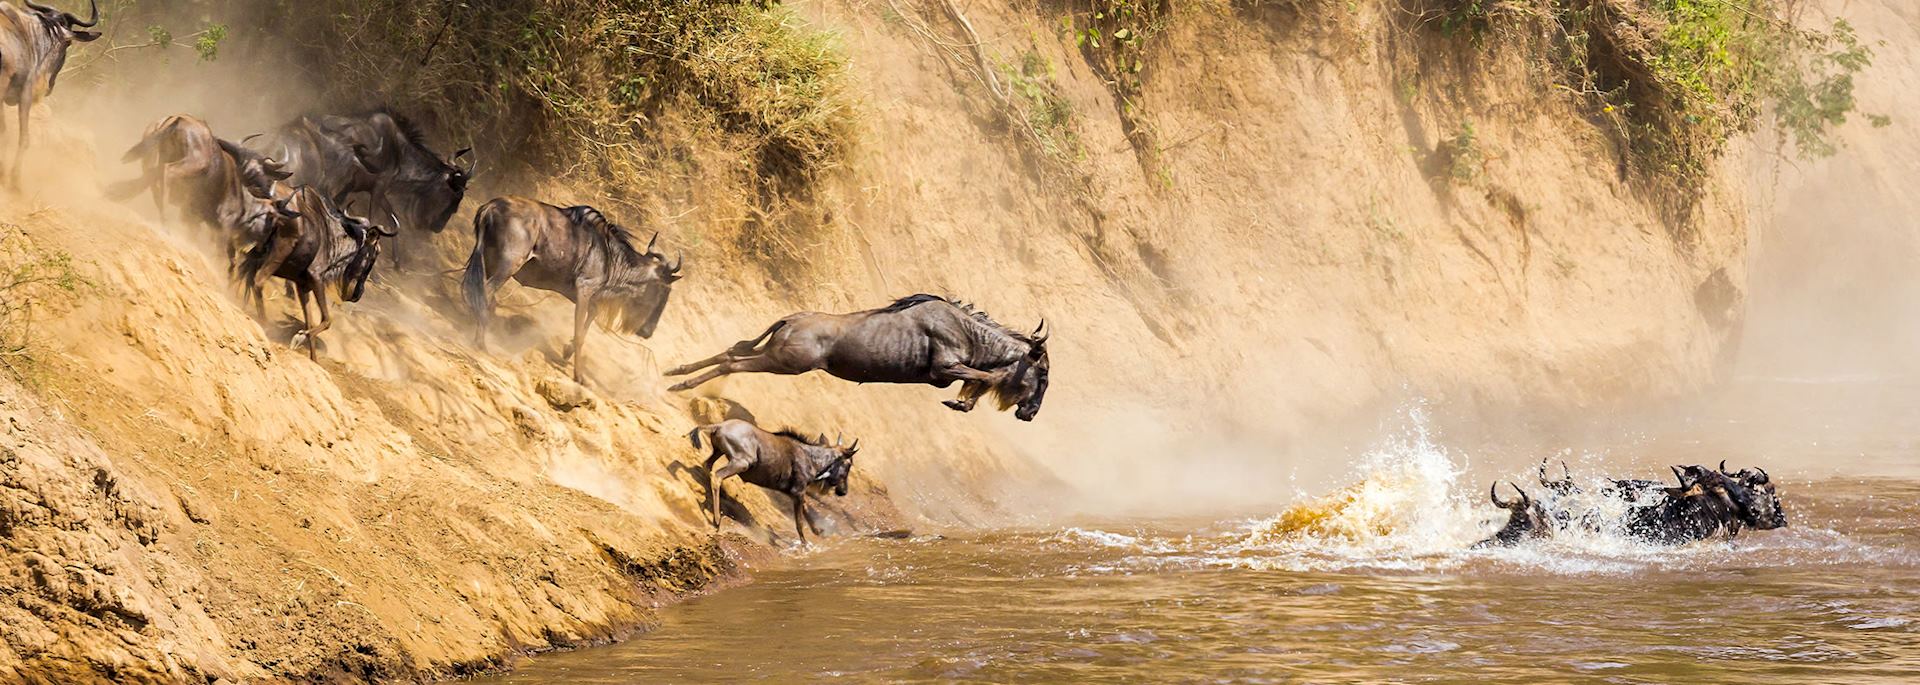 Wildebeest, Mara River